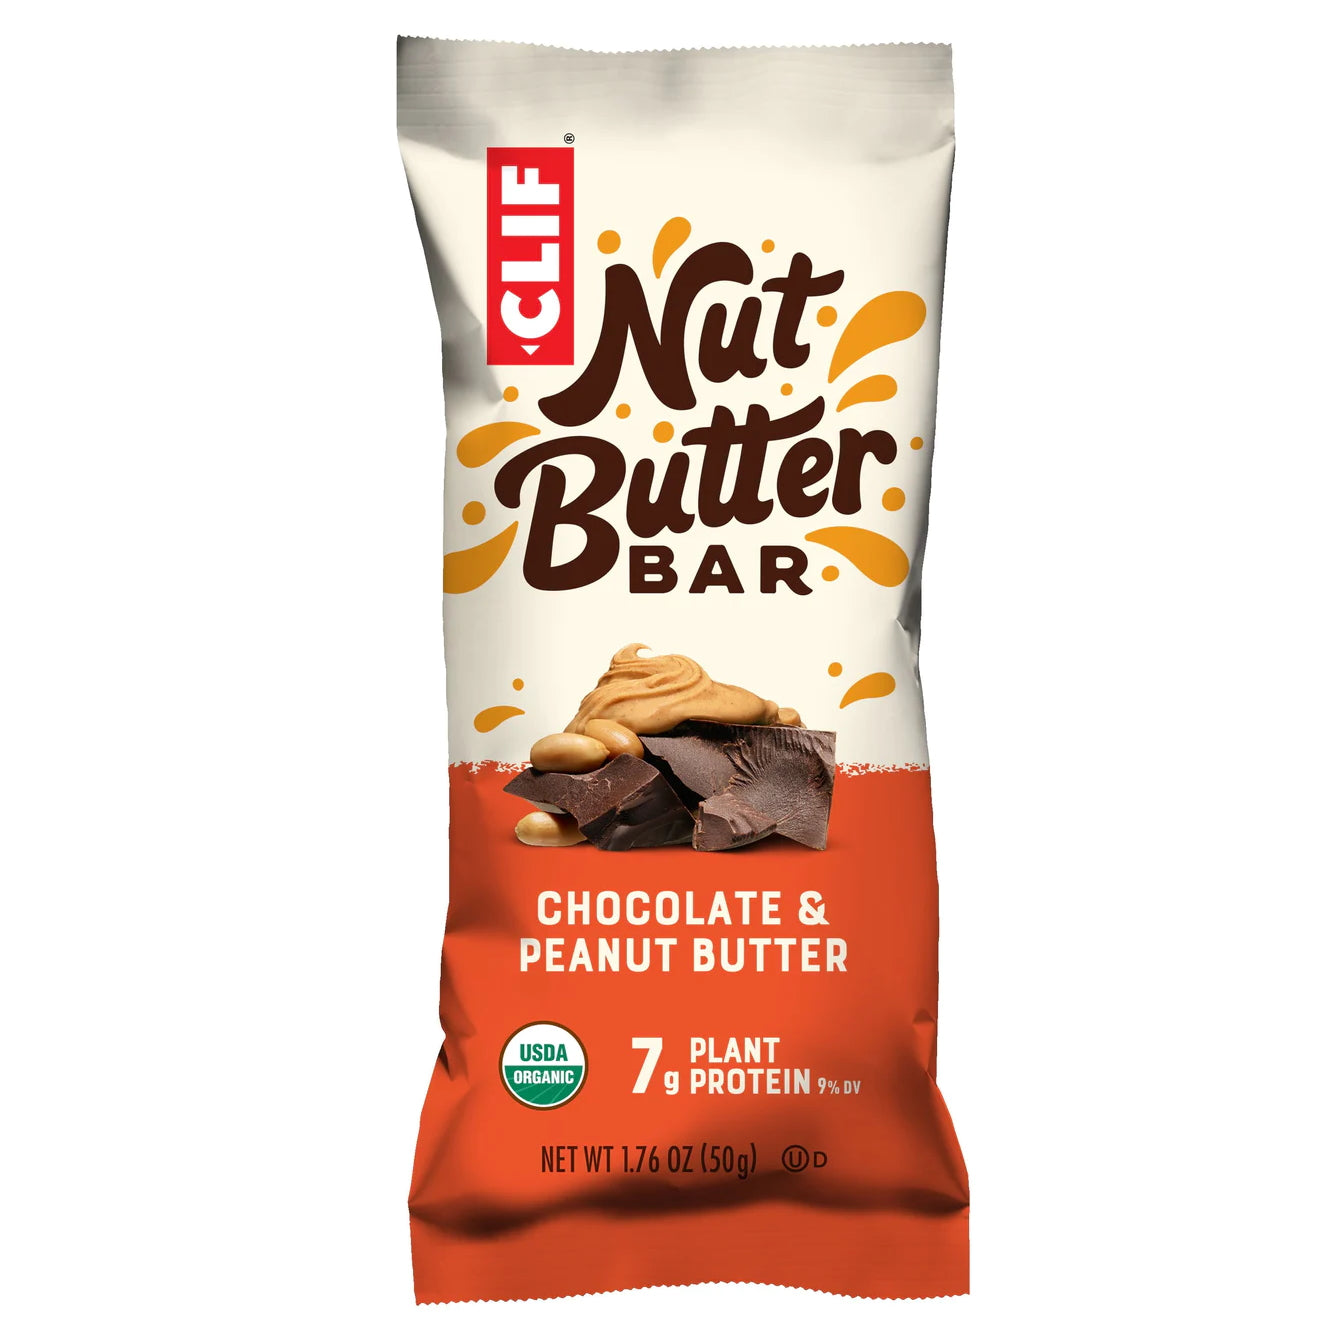 CLIF BAR Energie Riegel Nut Butter Bar, Chocolate Peanut Butter, 50g